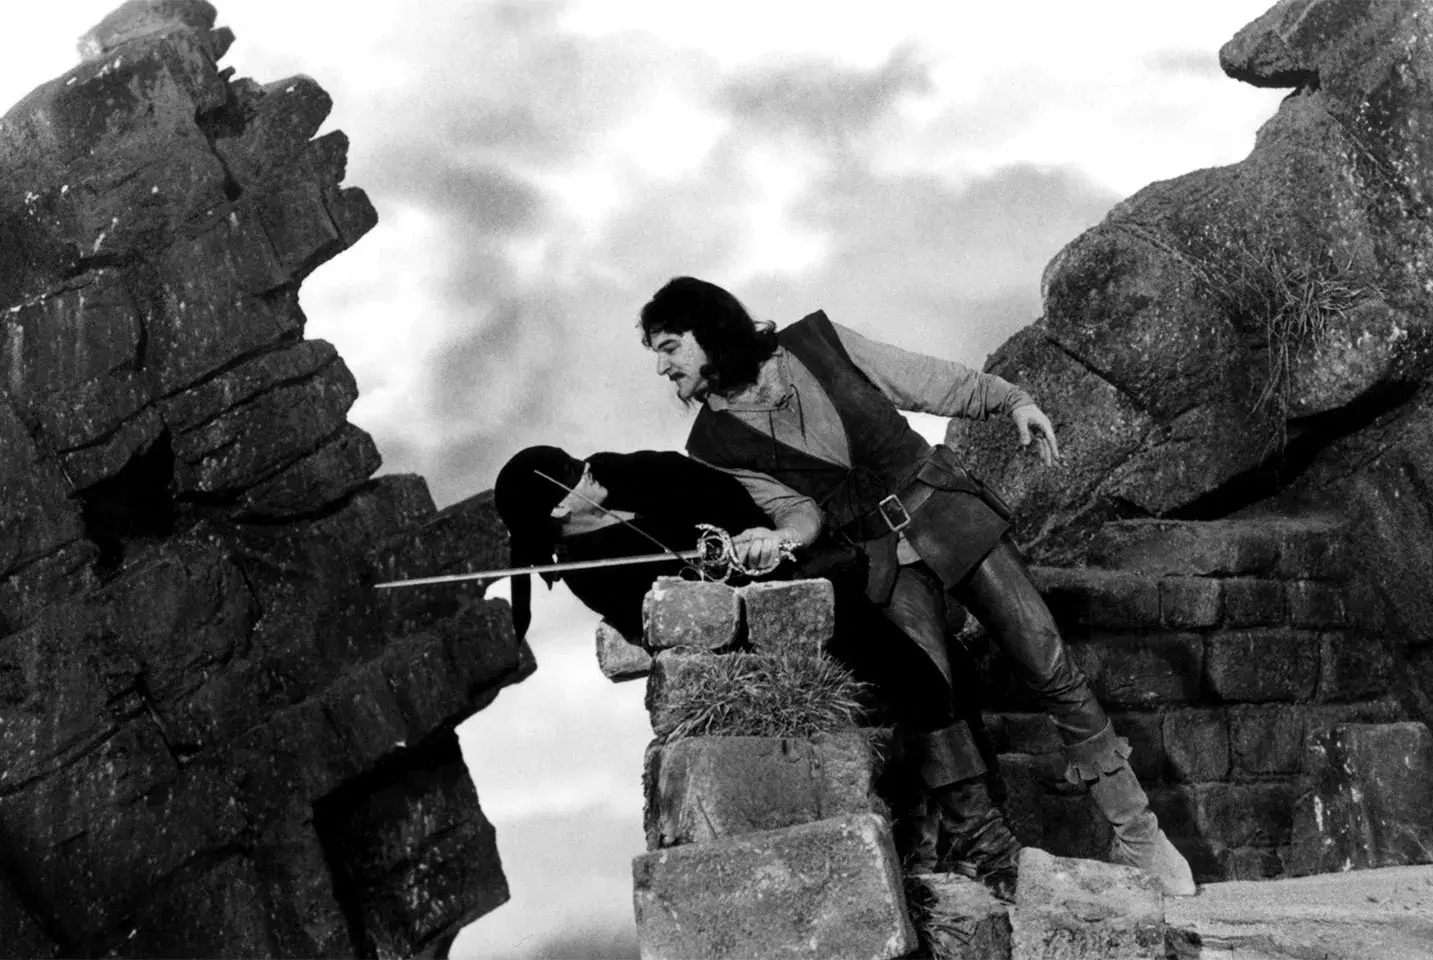 مندی پتینکین و کری الویس درحال مبارزه با شمشیر در میان صخره ها در فیلم عروس شاهزاده